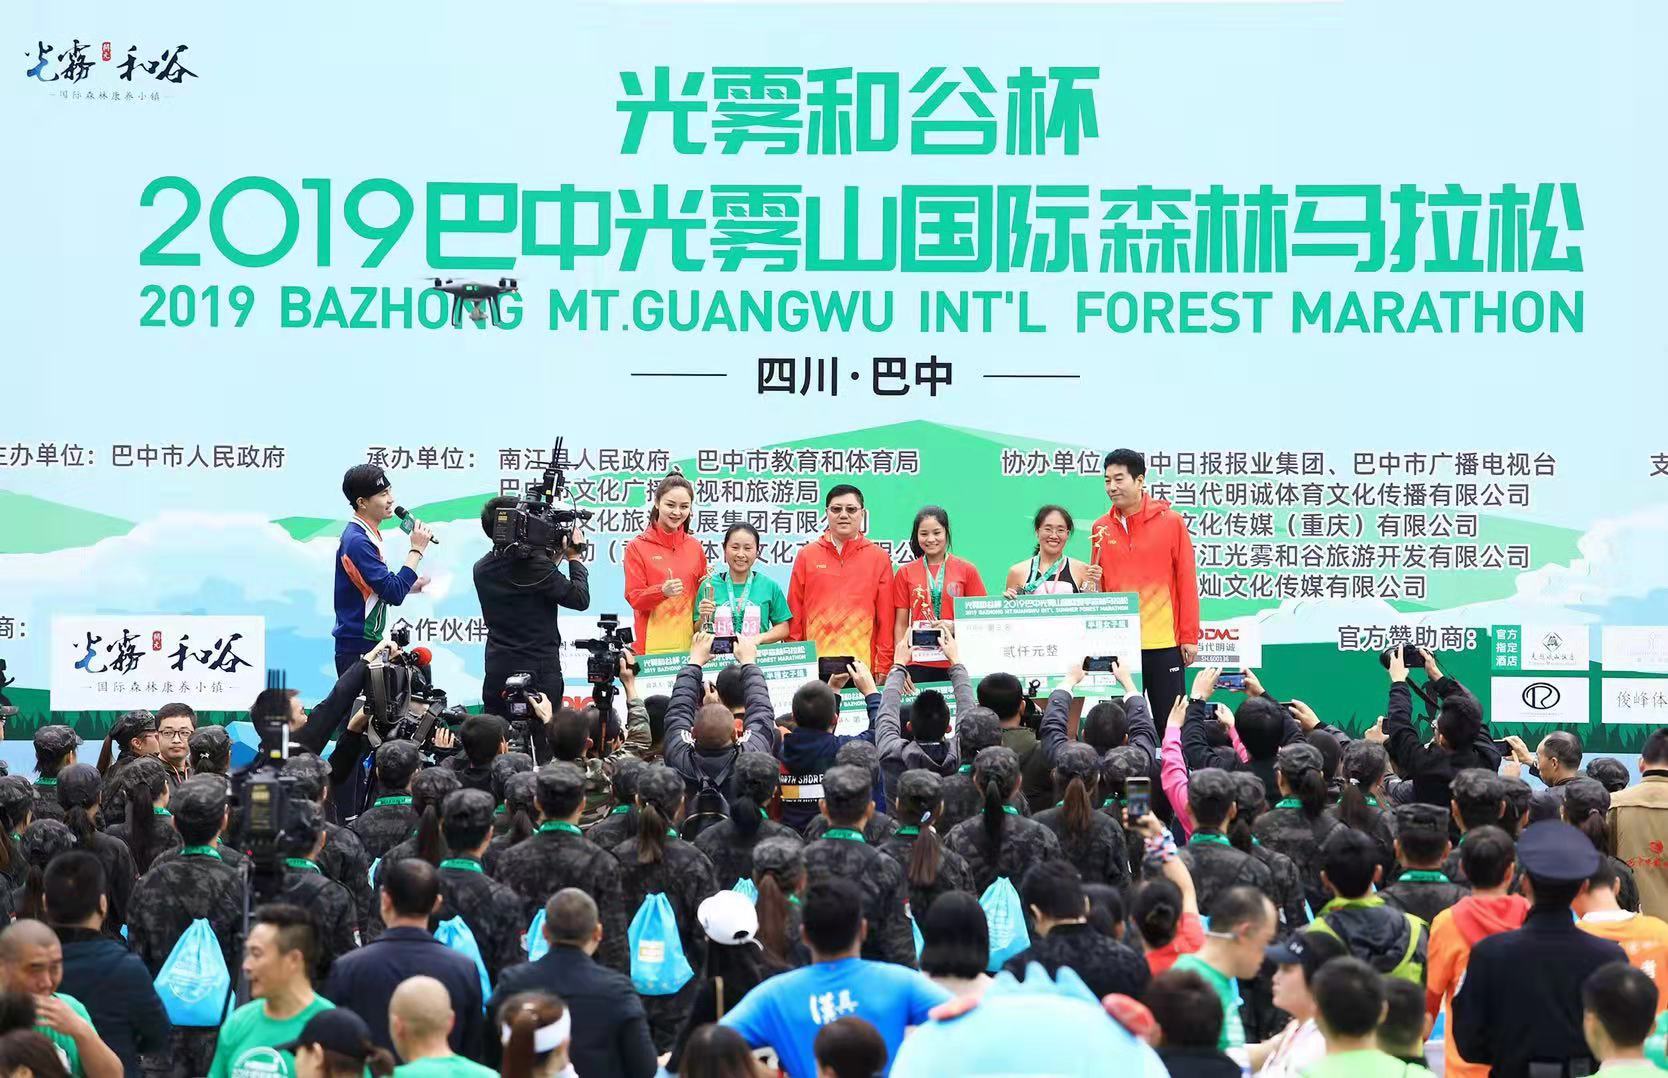 “光雾和谷杯” 2019巴中光雾山国际森林马拉松举办 吸引5000名选手参赛